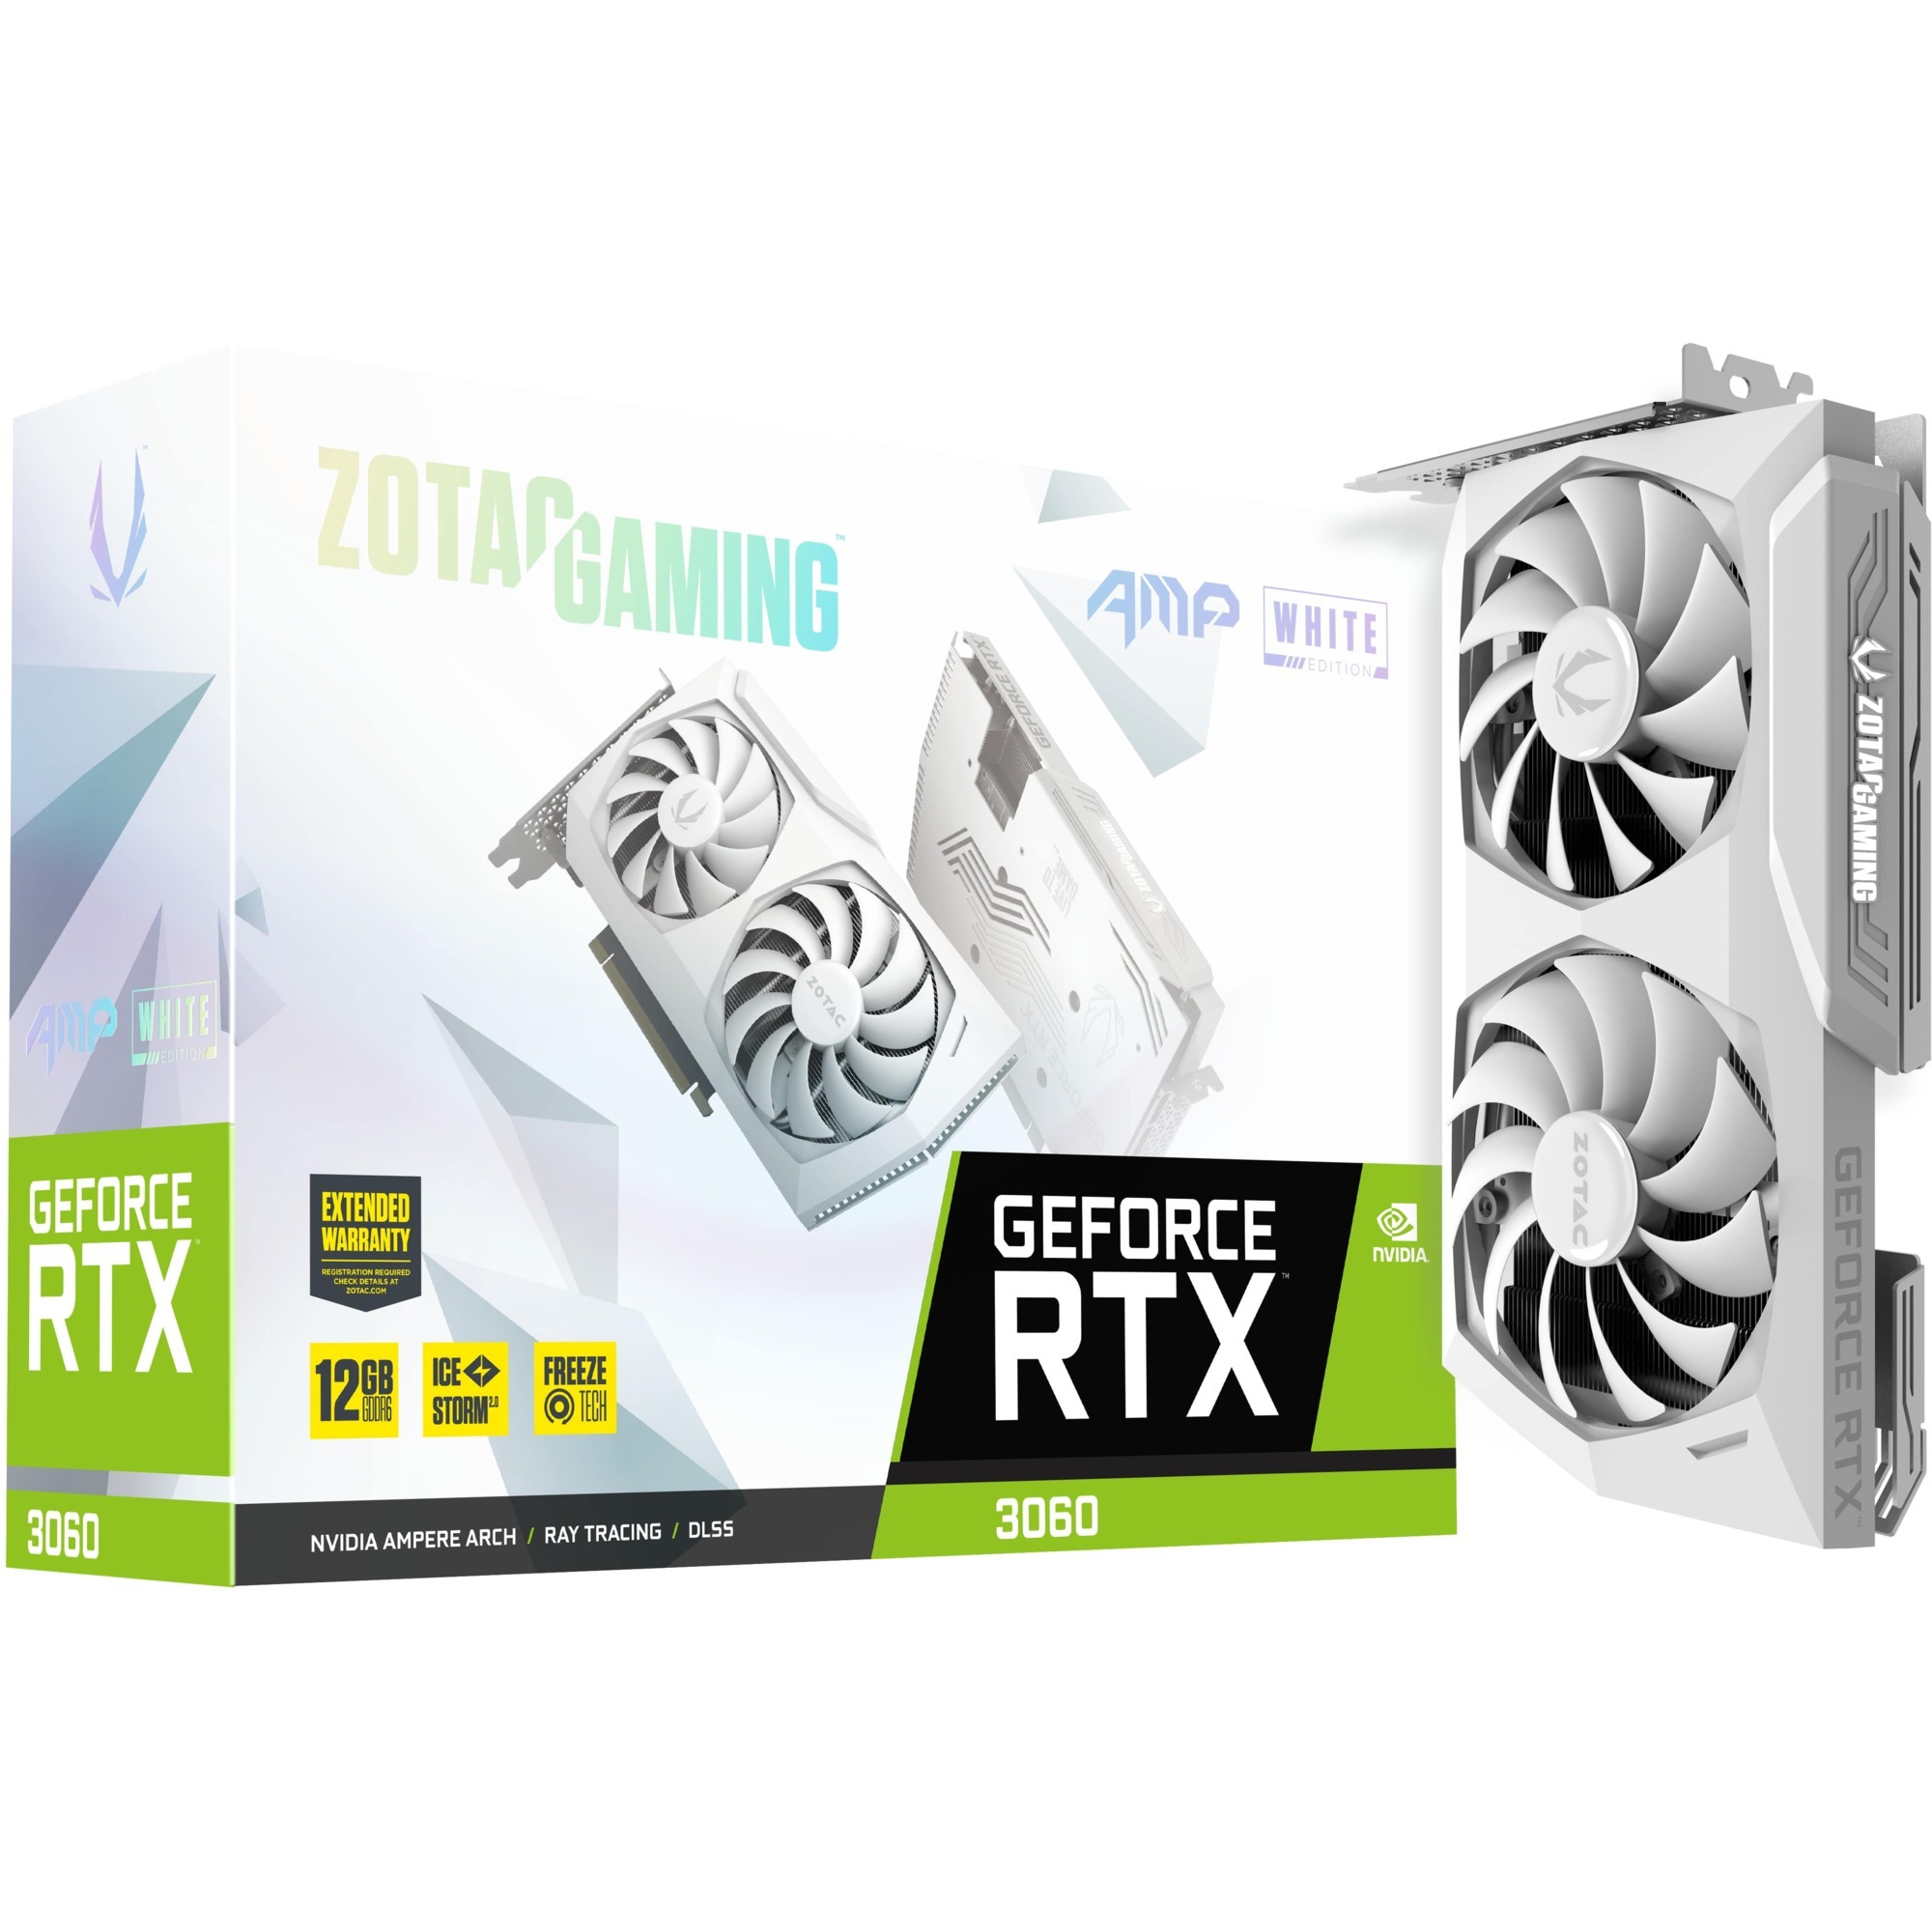 Image of Alternate - GeForce RTX 3060 AMP WHITE EDITION, Grafikkarte online einkaufen bei Alternate